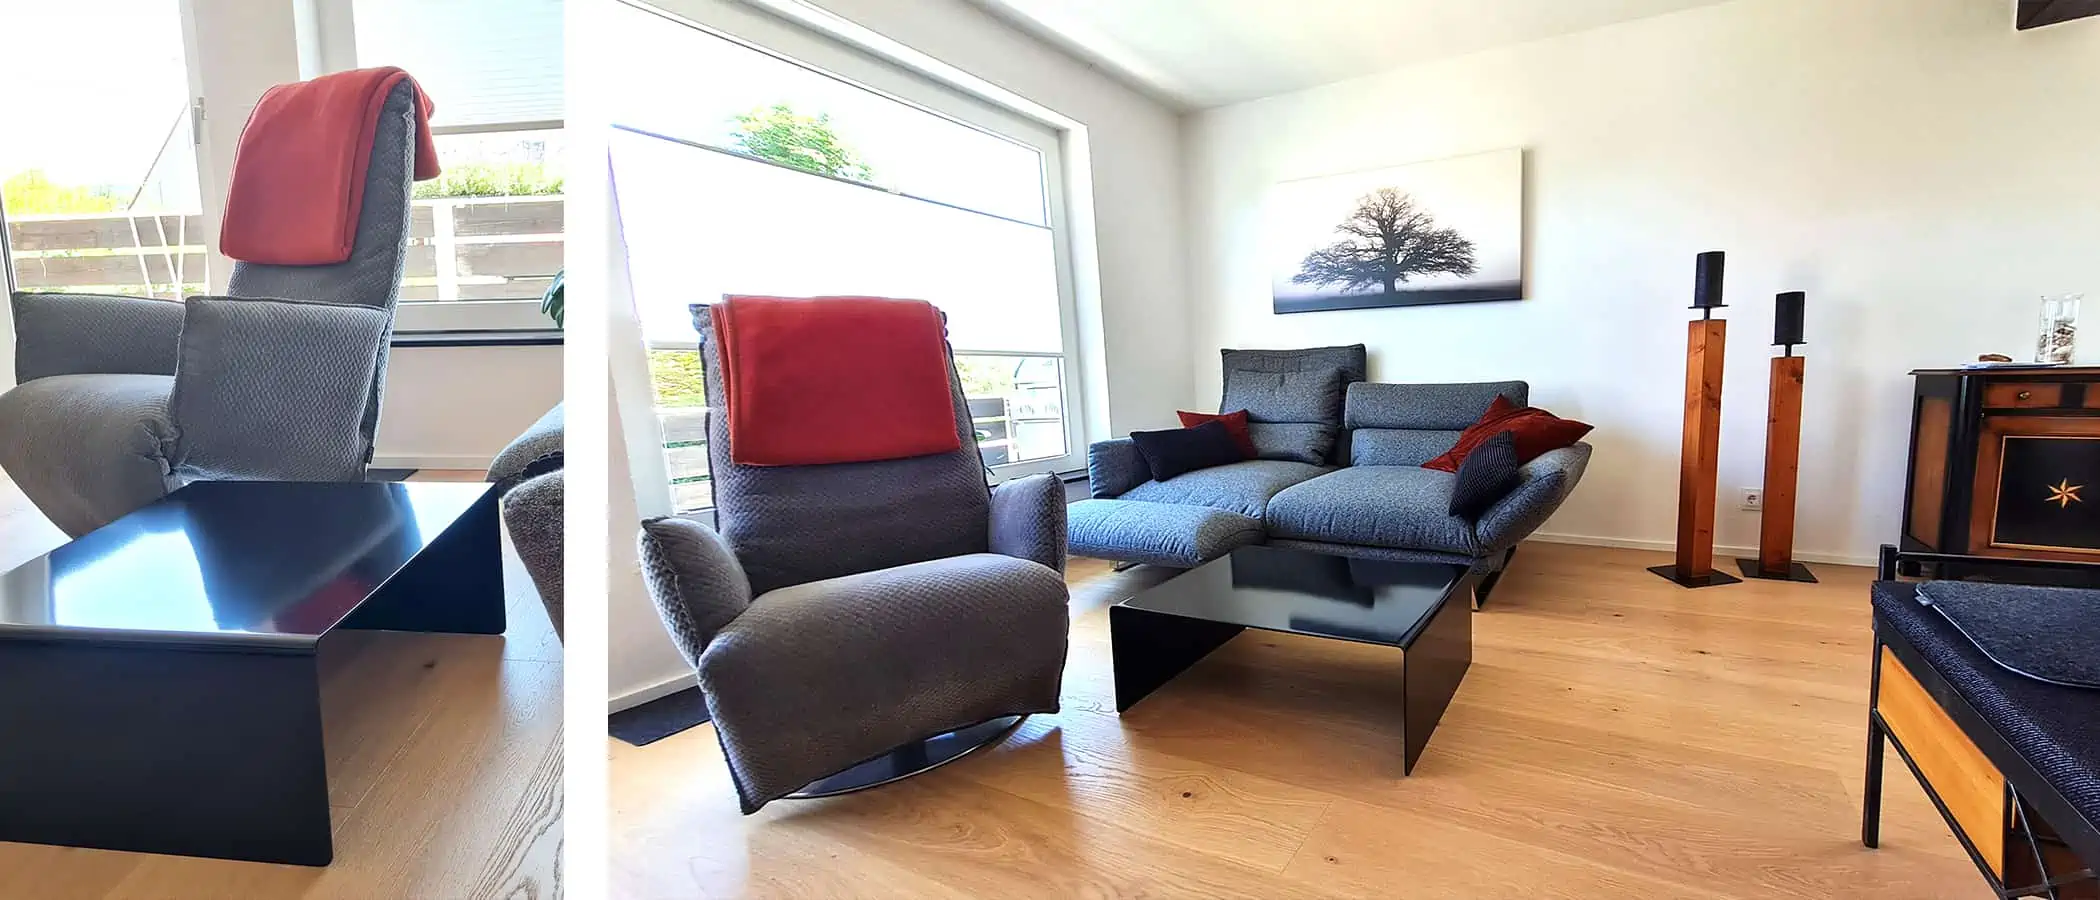 design-moebel-stahlzart-couchtisch-rund-schwarz-metall-modern-quadratisch-designer-industrial-style-minimalistisch-wohnzimmer-sessel-sofa-ideen